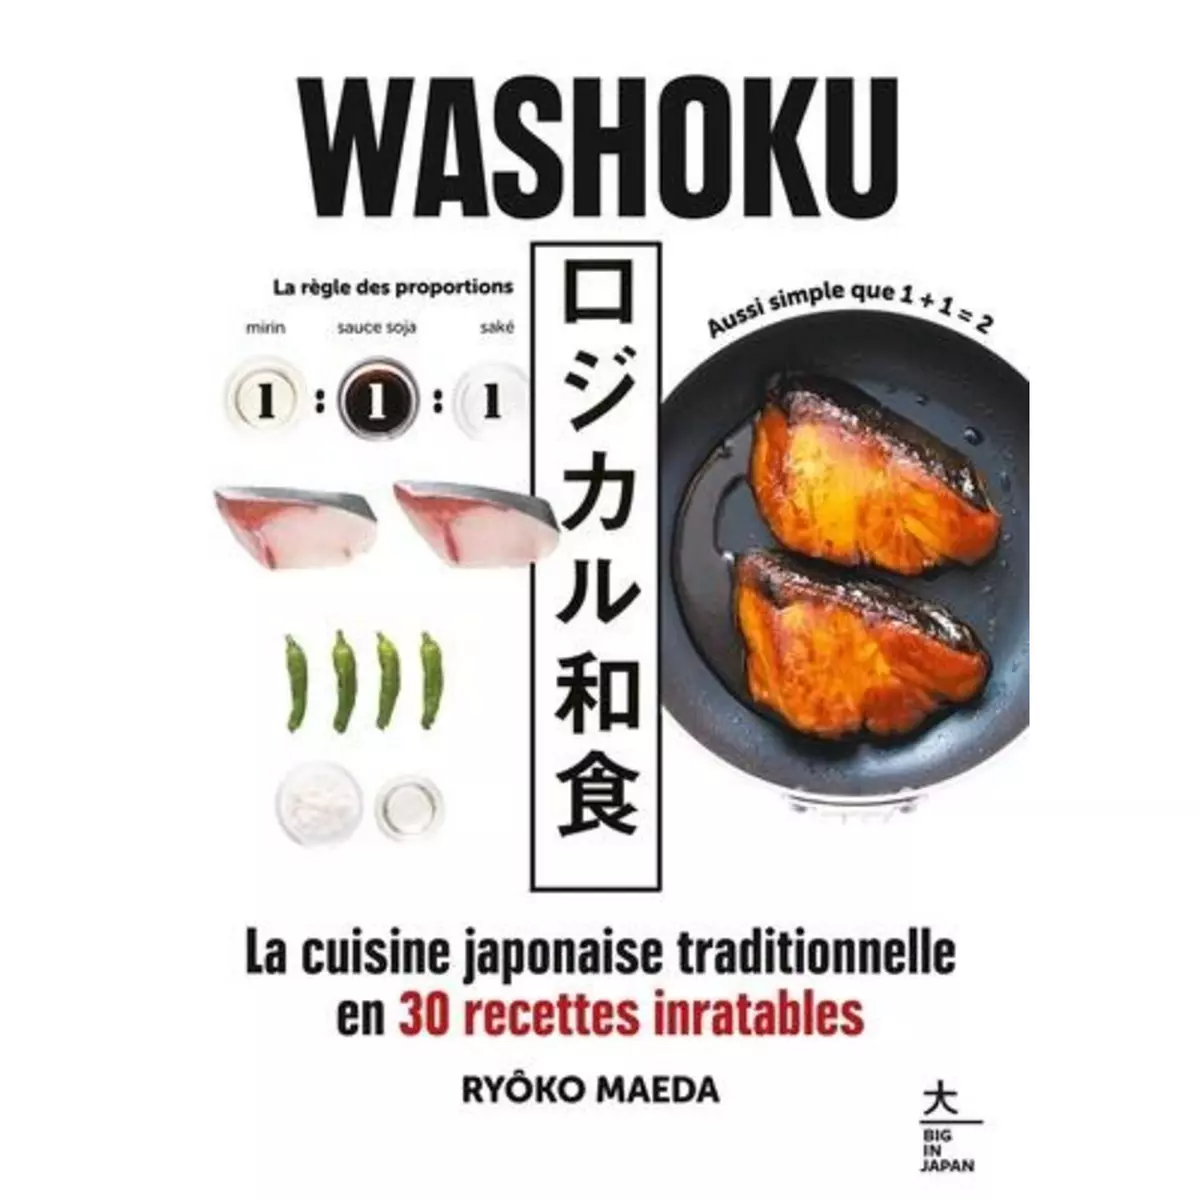  WASHOKU. LA CUISINE TRADITIONNELLE JAPONAISE EN 30 RECETTES INRATABLES, Maeda Ryôko